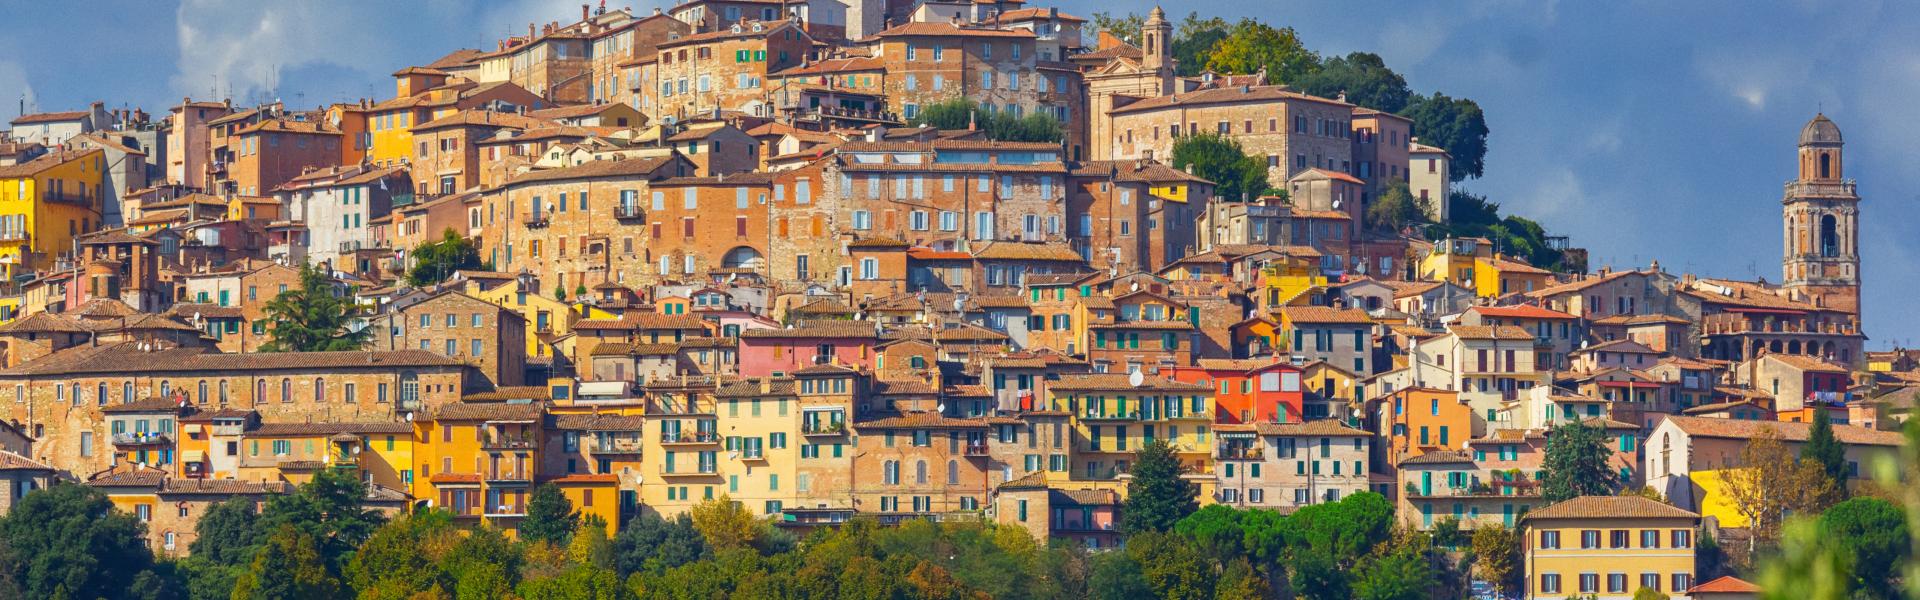 Perugia Scenic View